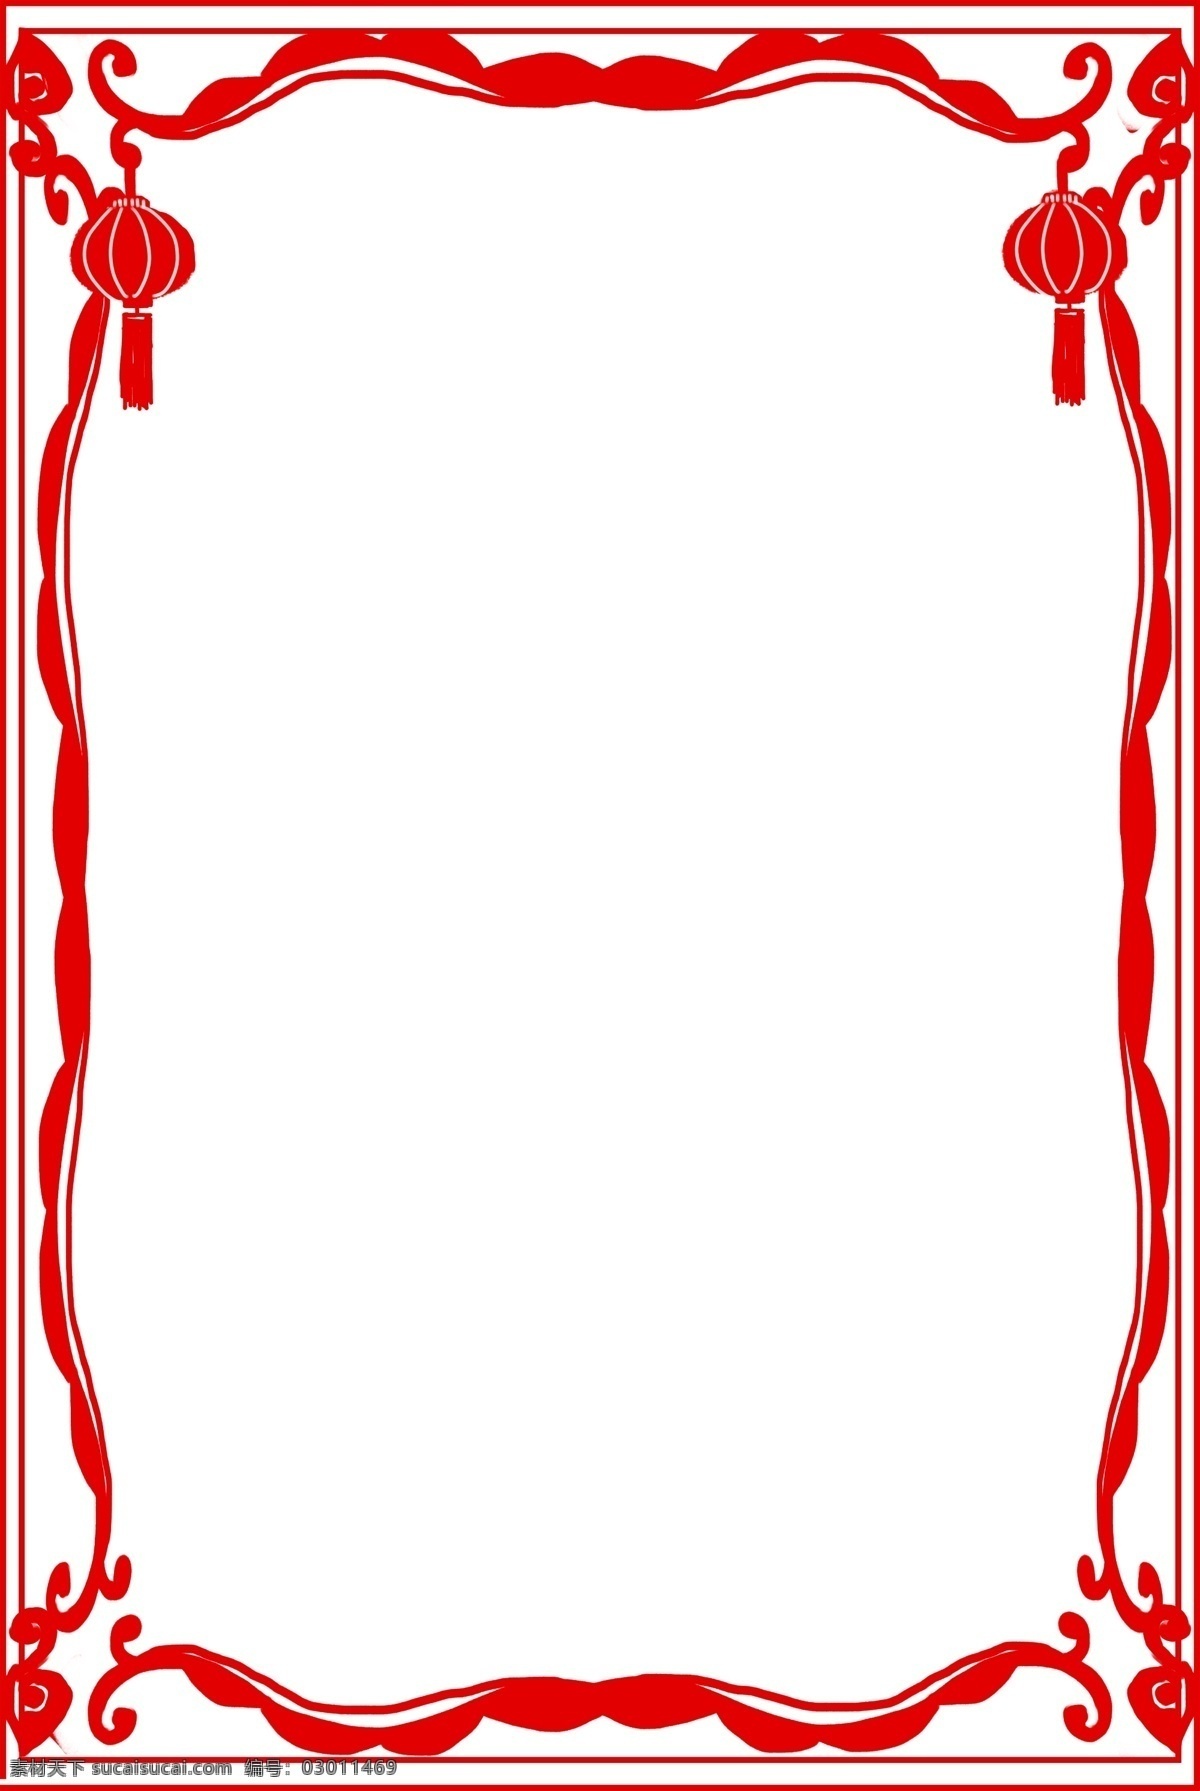 新年 红色 灯笼 边框 插画 新年灯笼边框 漂亮 手绘灯笼边框 卡通灯笼边框 灯笼边框装饰